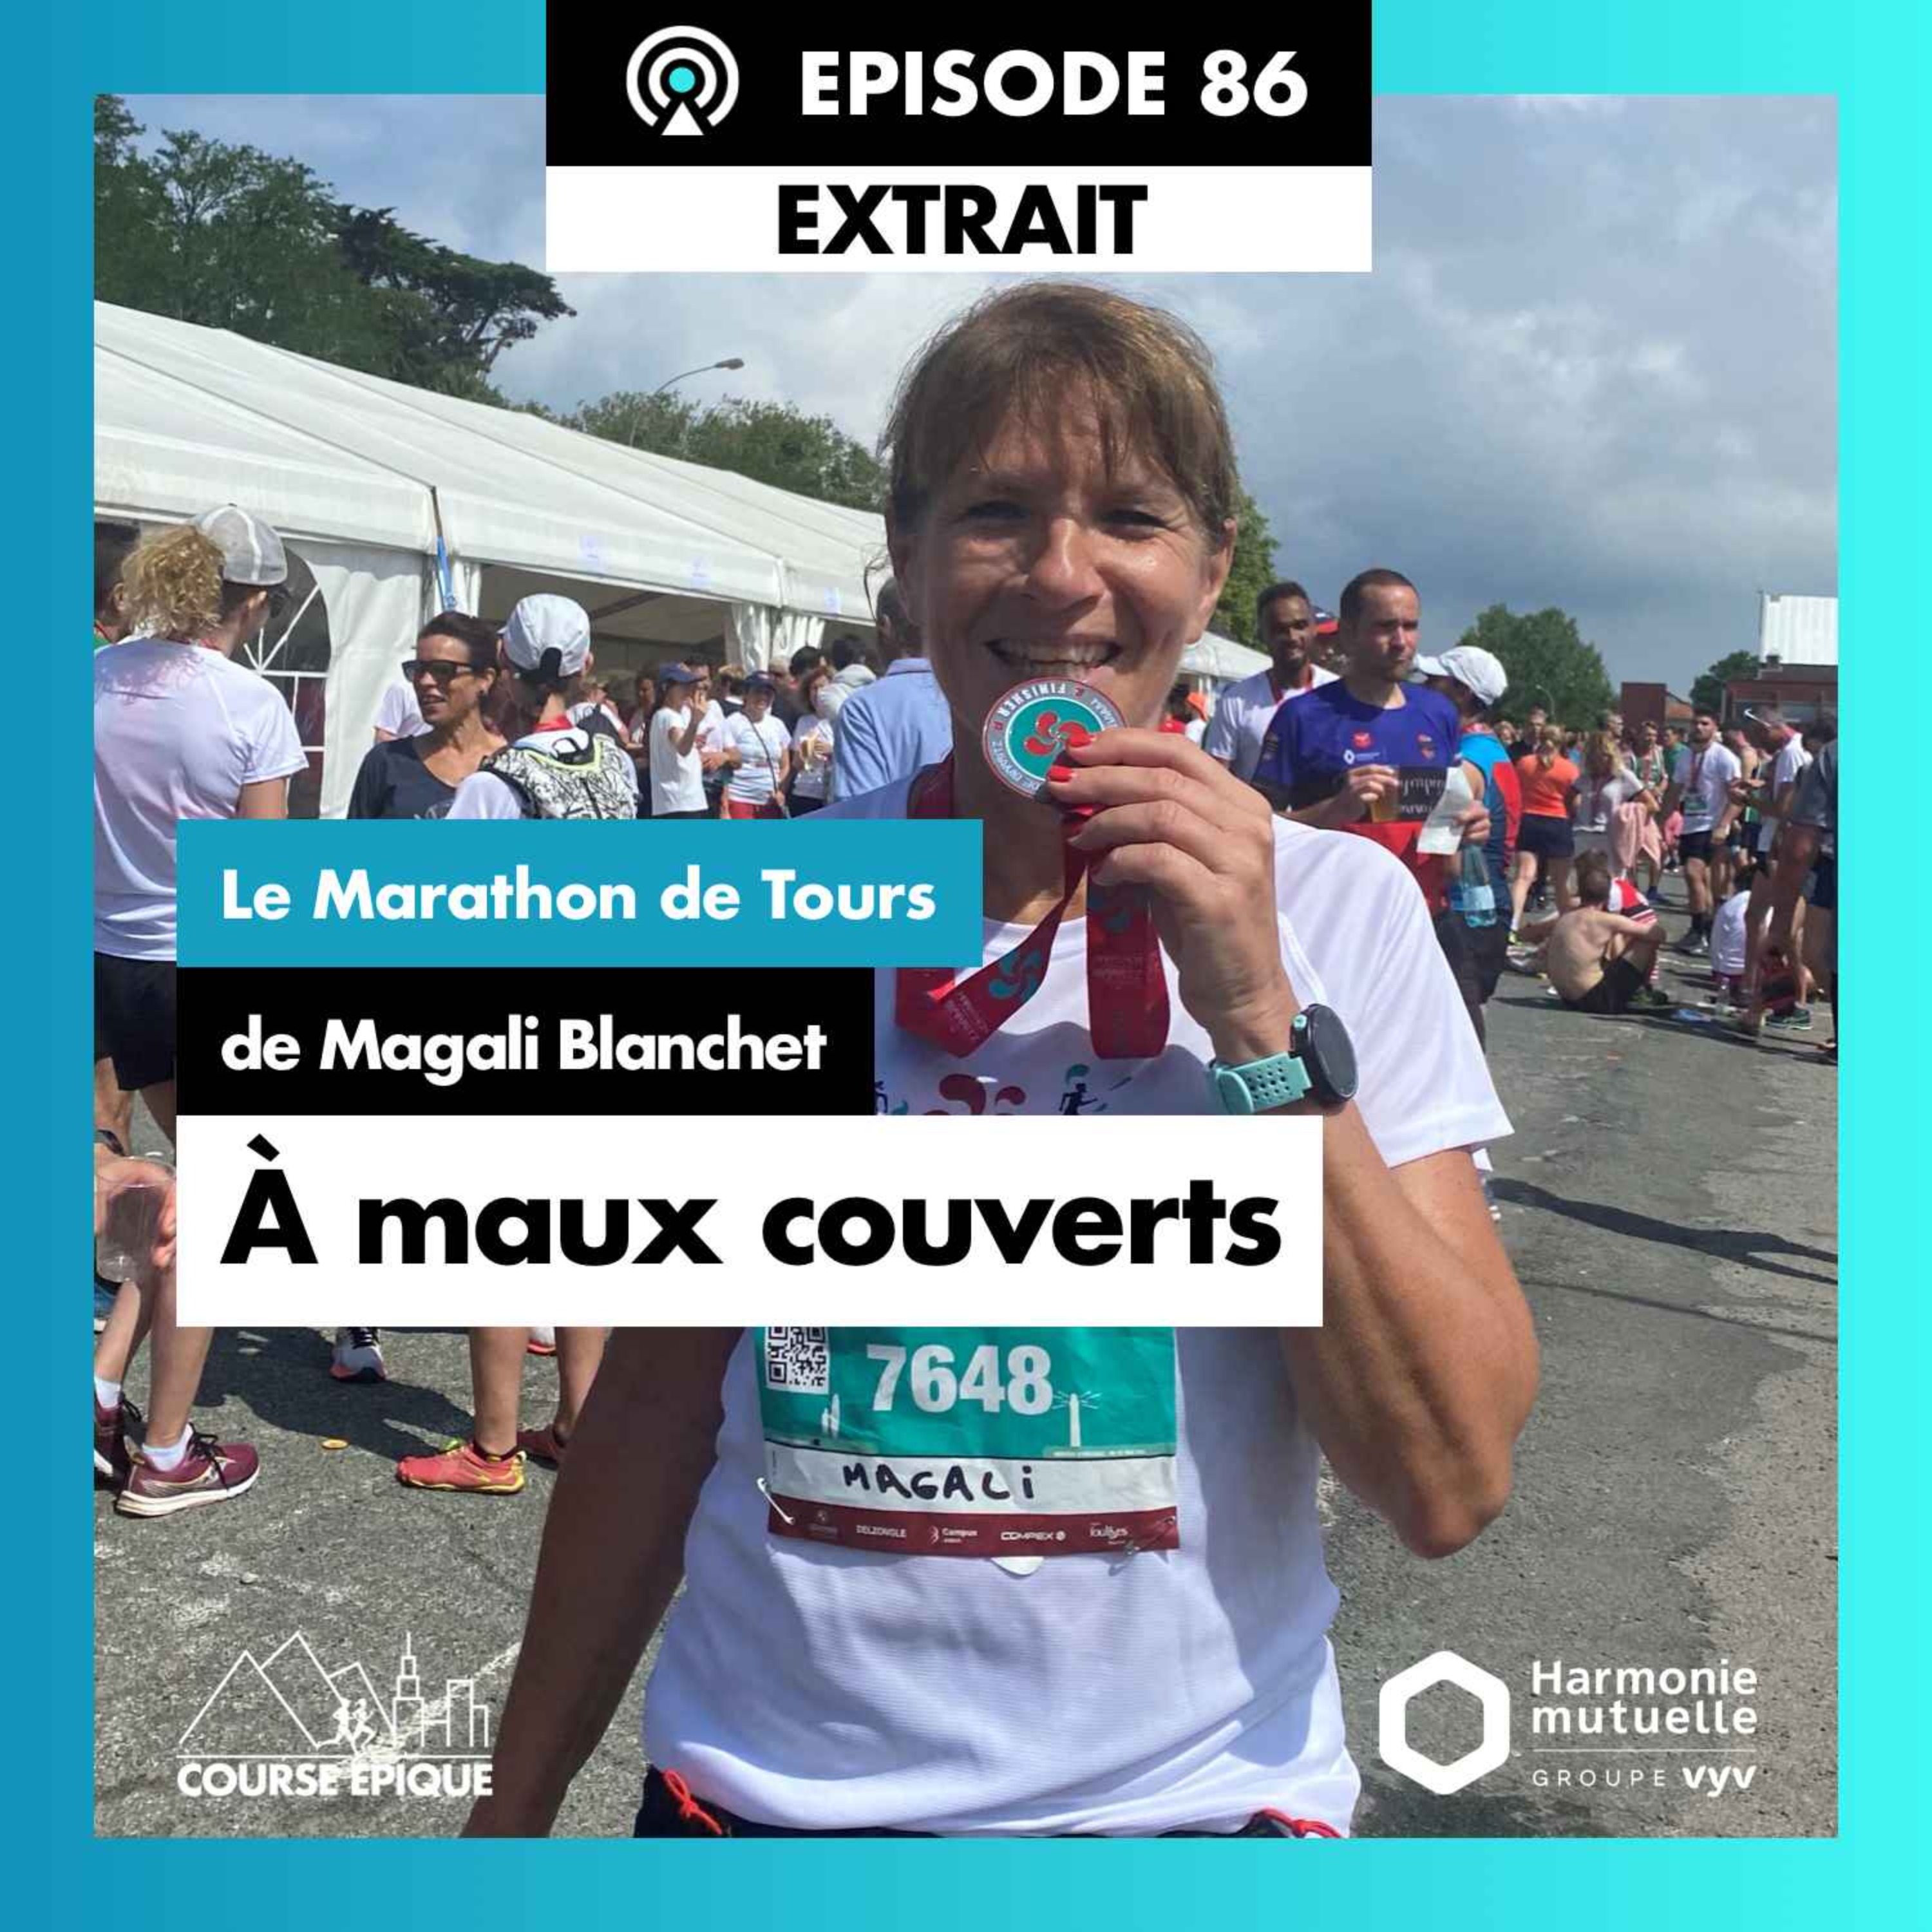 [EXTRAIT] "A maux couverts", le Marathon de Tours de Magali Blanchet